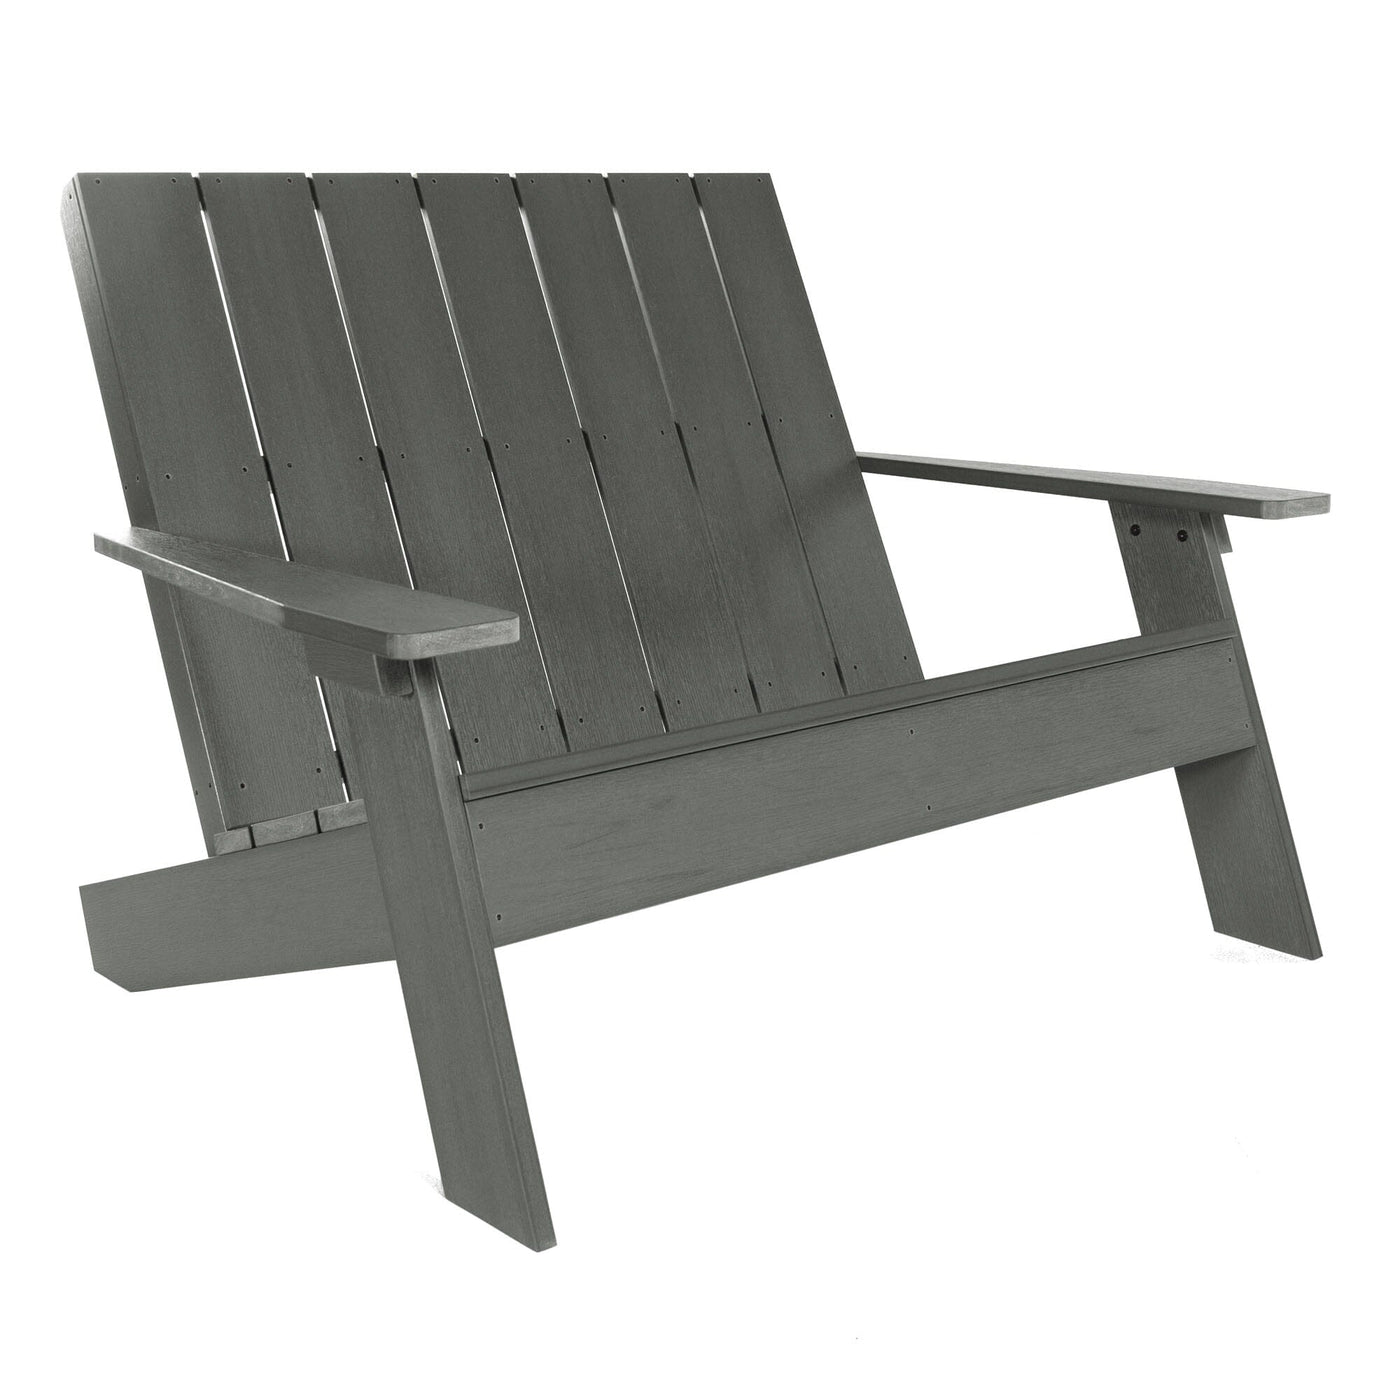 Refurbished Italica Modern Double Wide Adirondack Chair Highwood USA Coastal Teak 